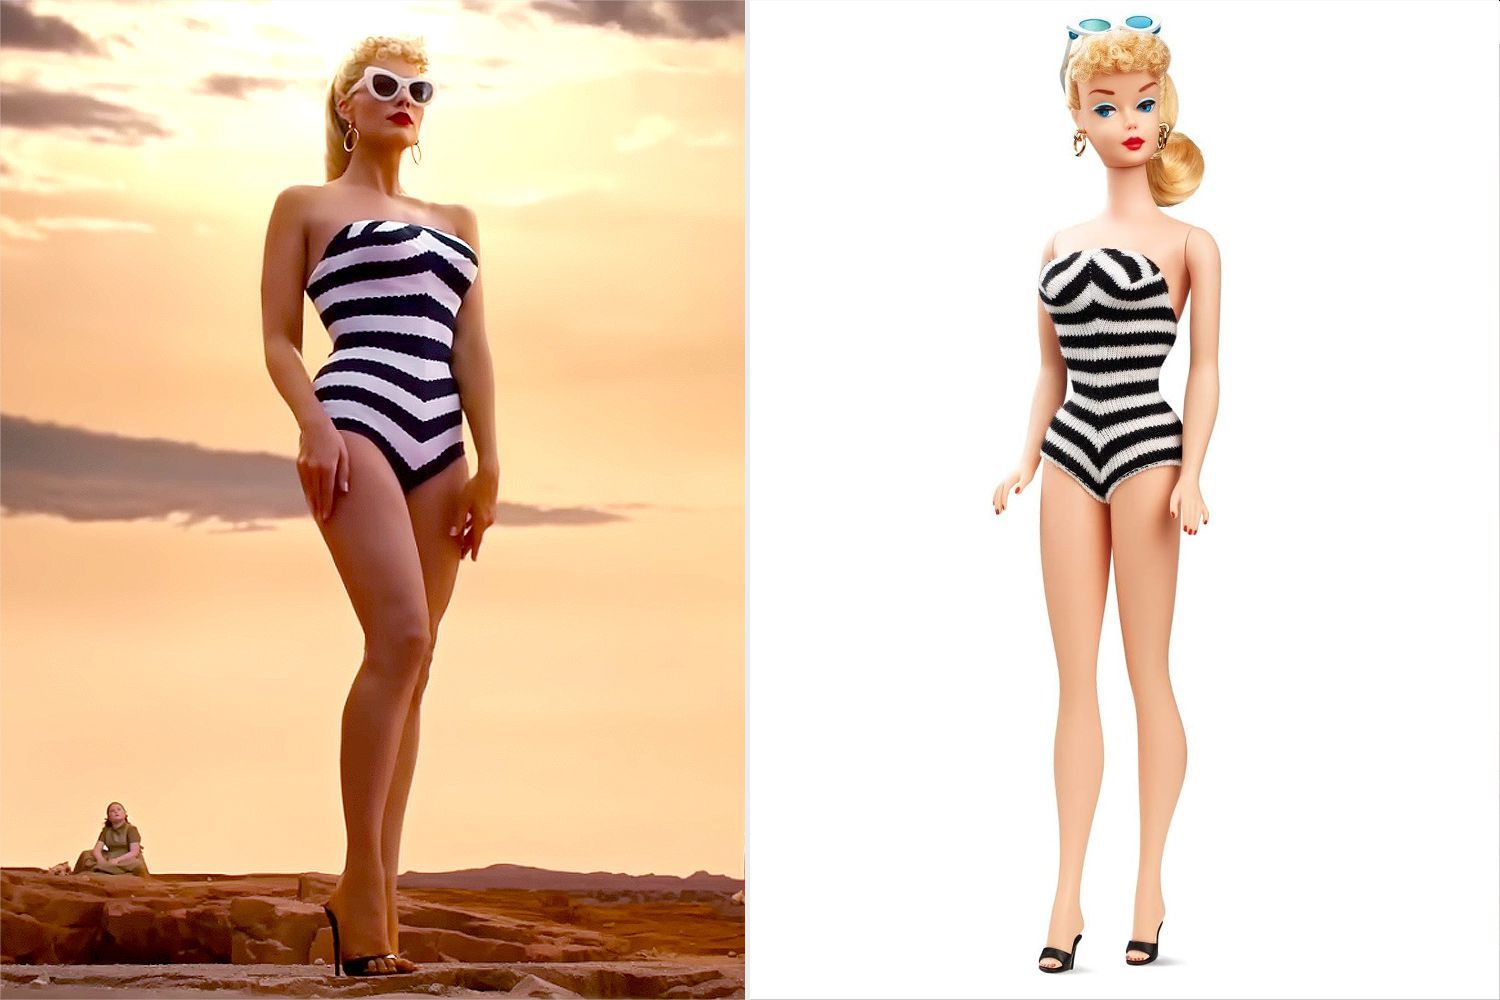 Barbie e Margot Robbie a confronto